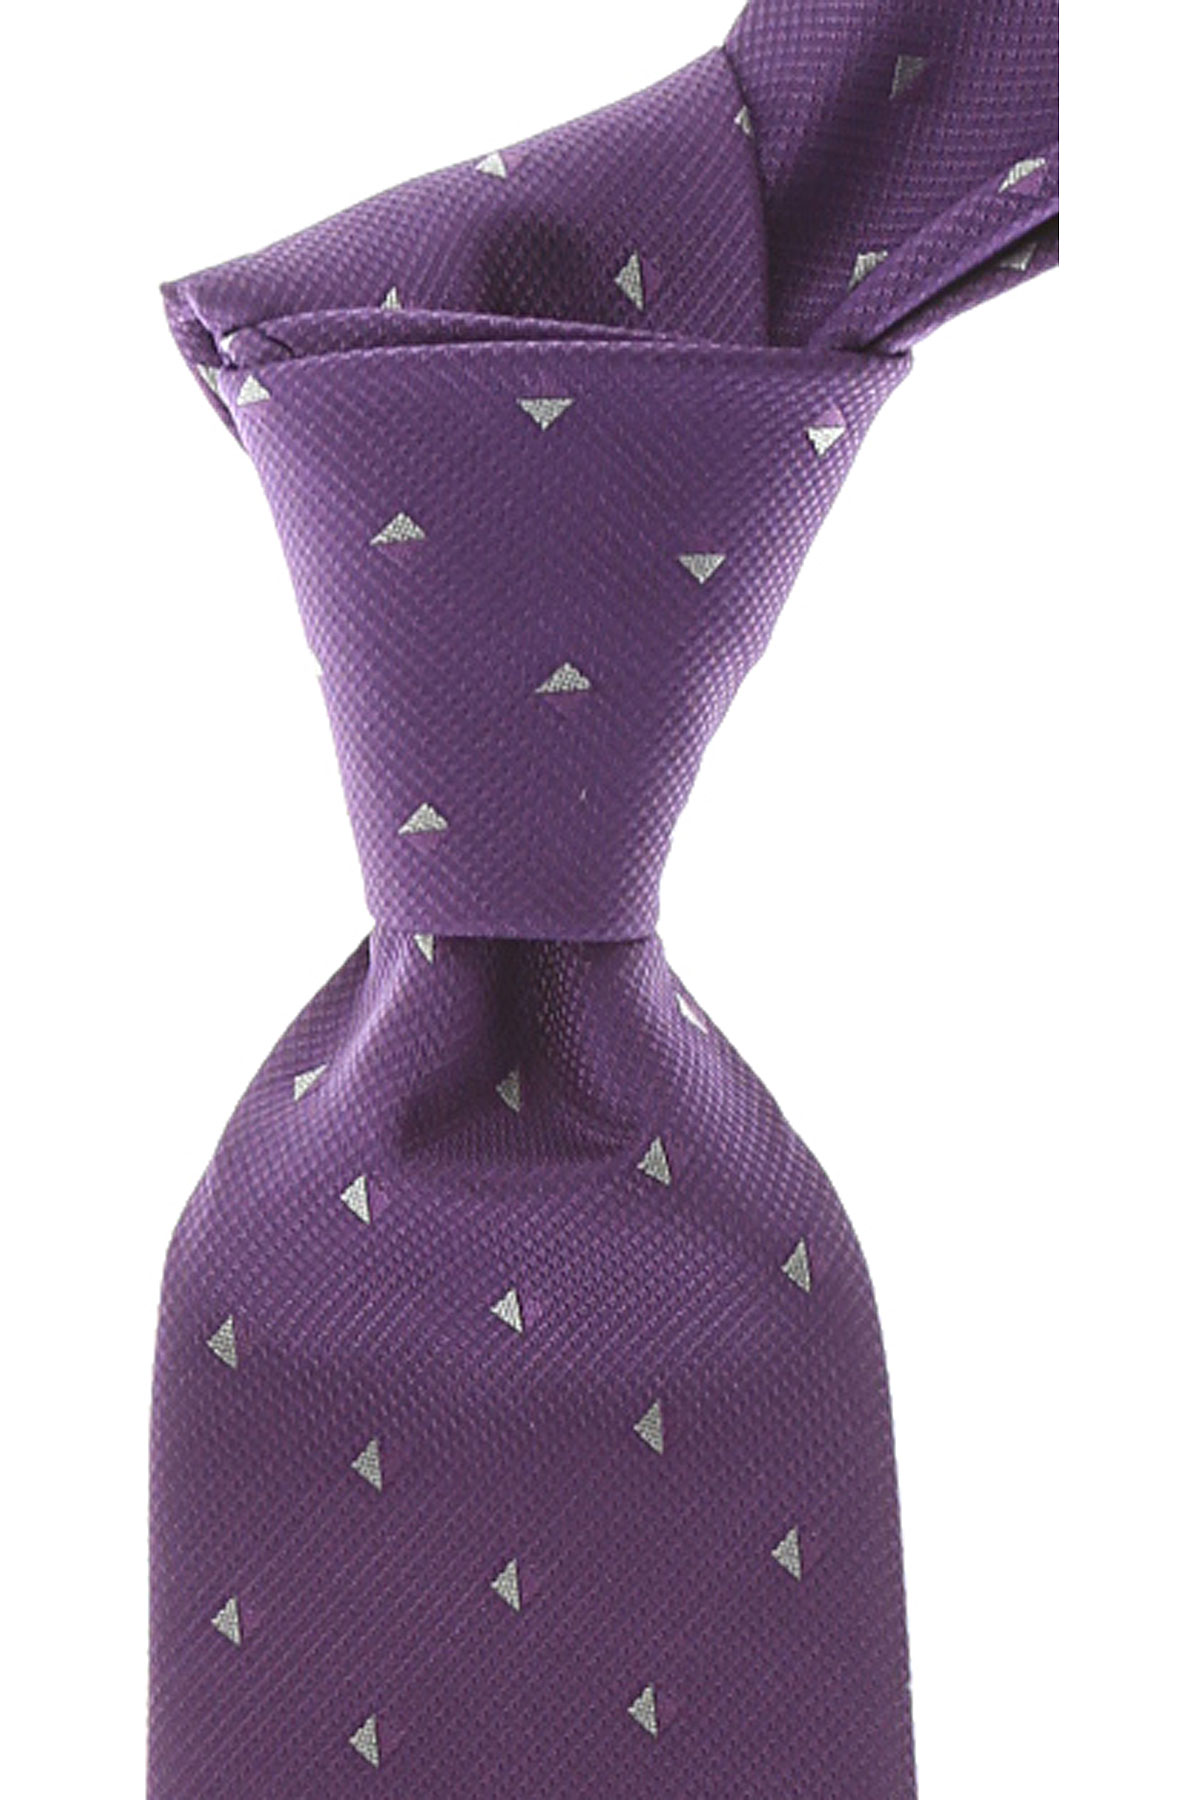 Cravates Gianni Versace , Violet, Soie, 2017